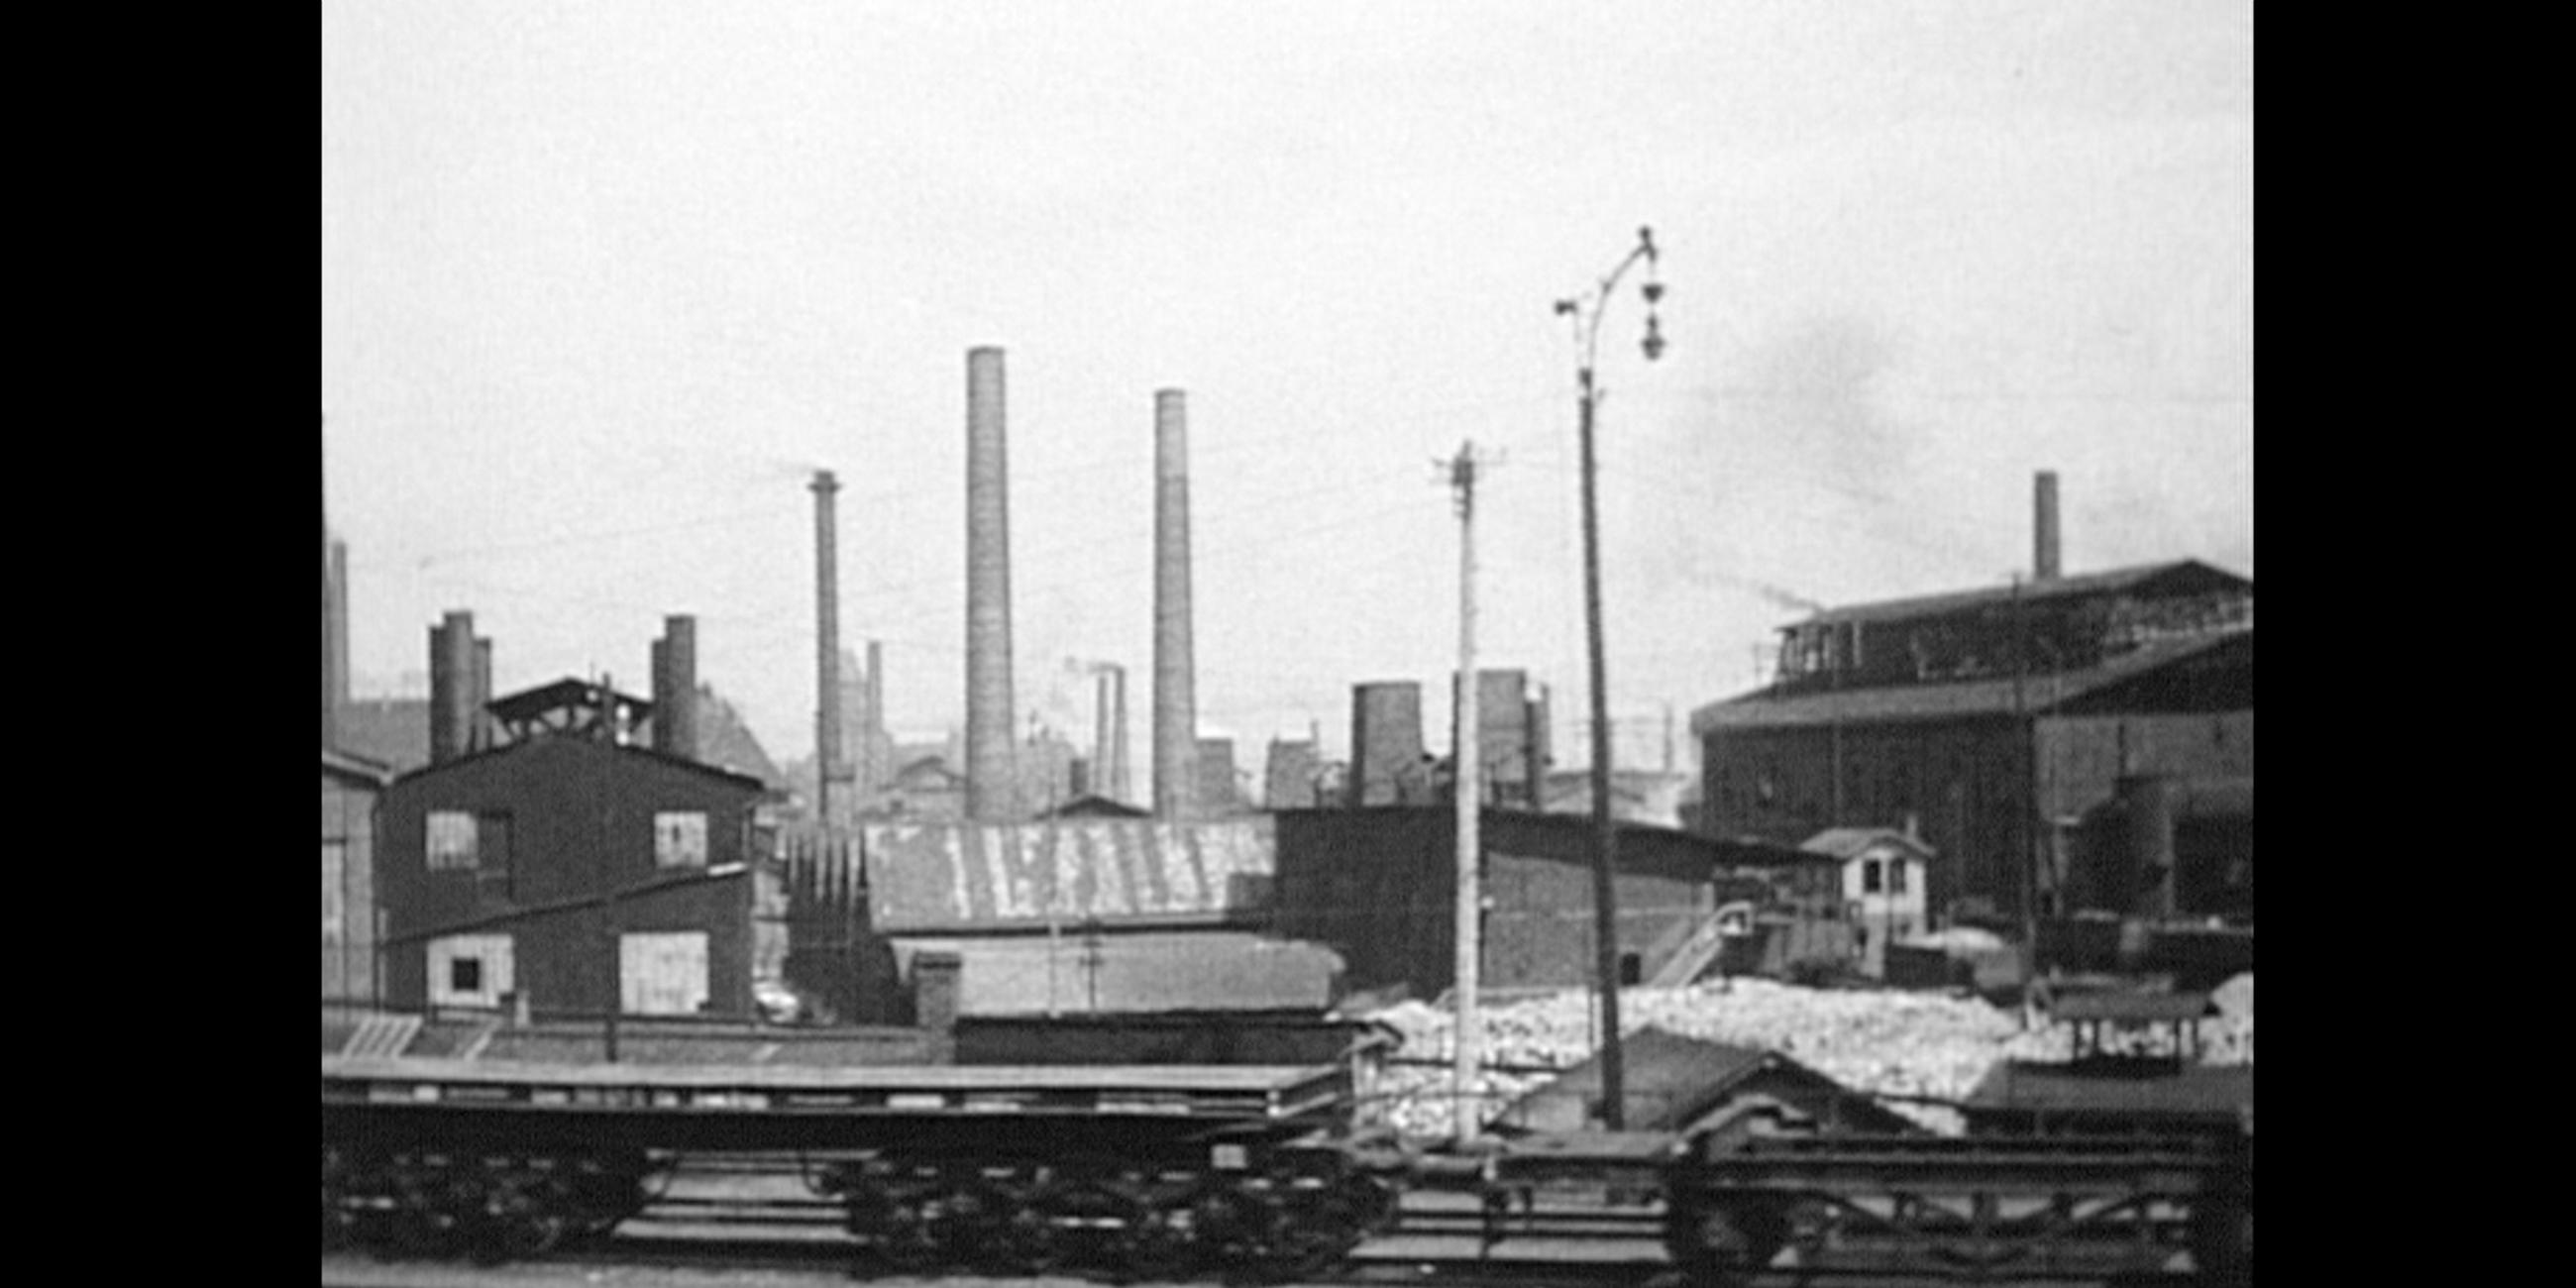 schwarz-weiß Bild, im Vordergrund Bahngleise, im Hintergrund mehrere Schornsteine und Strommasten. 